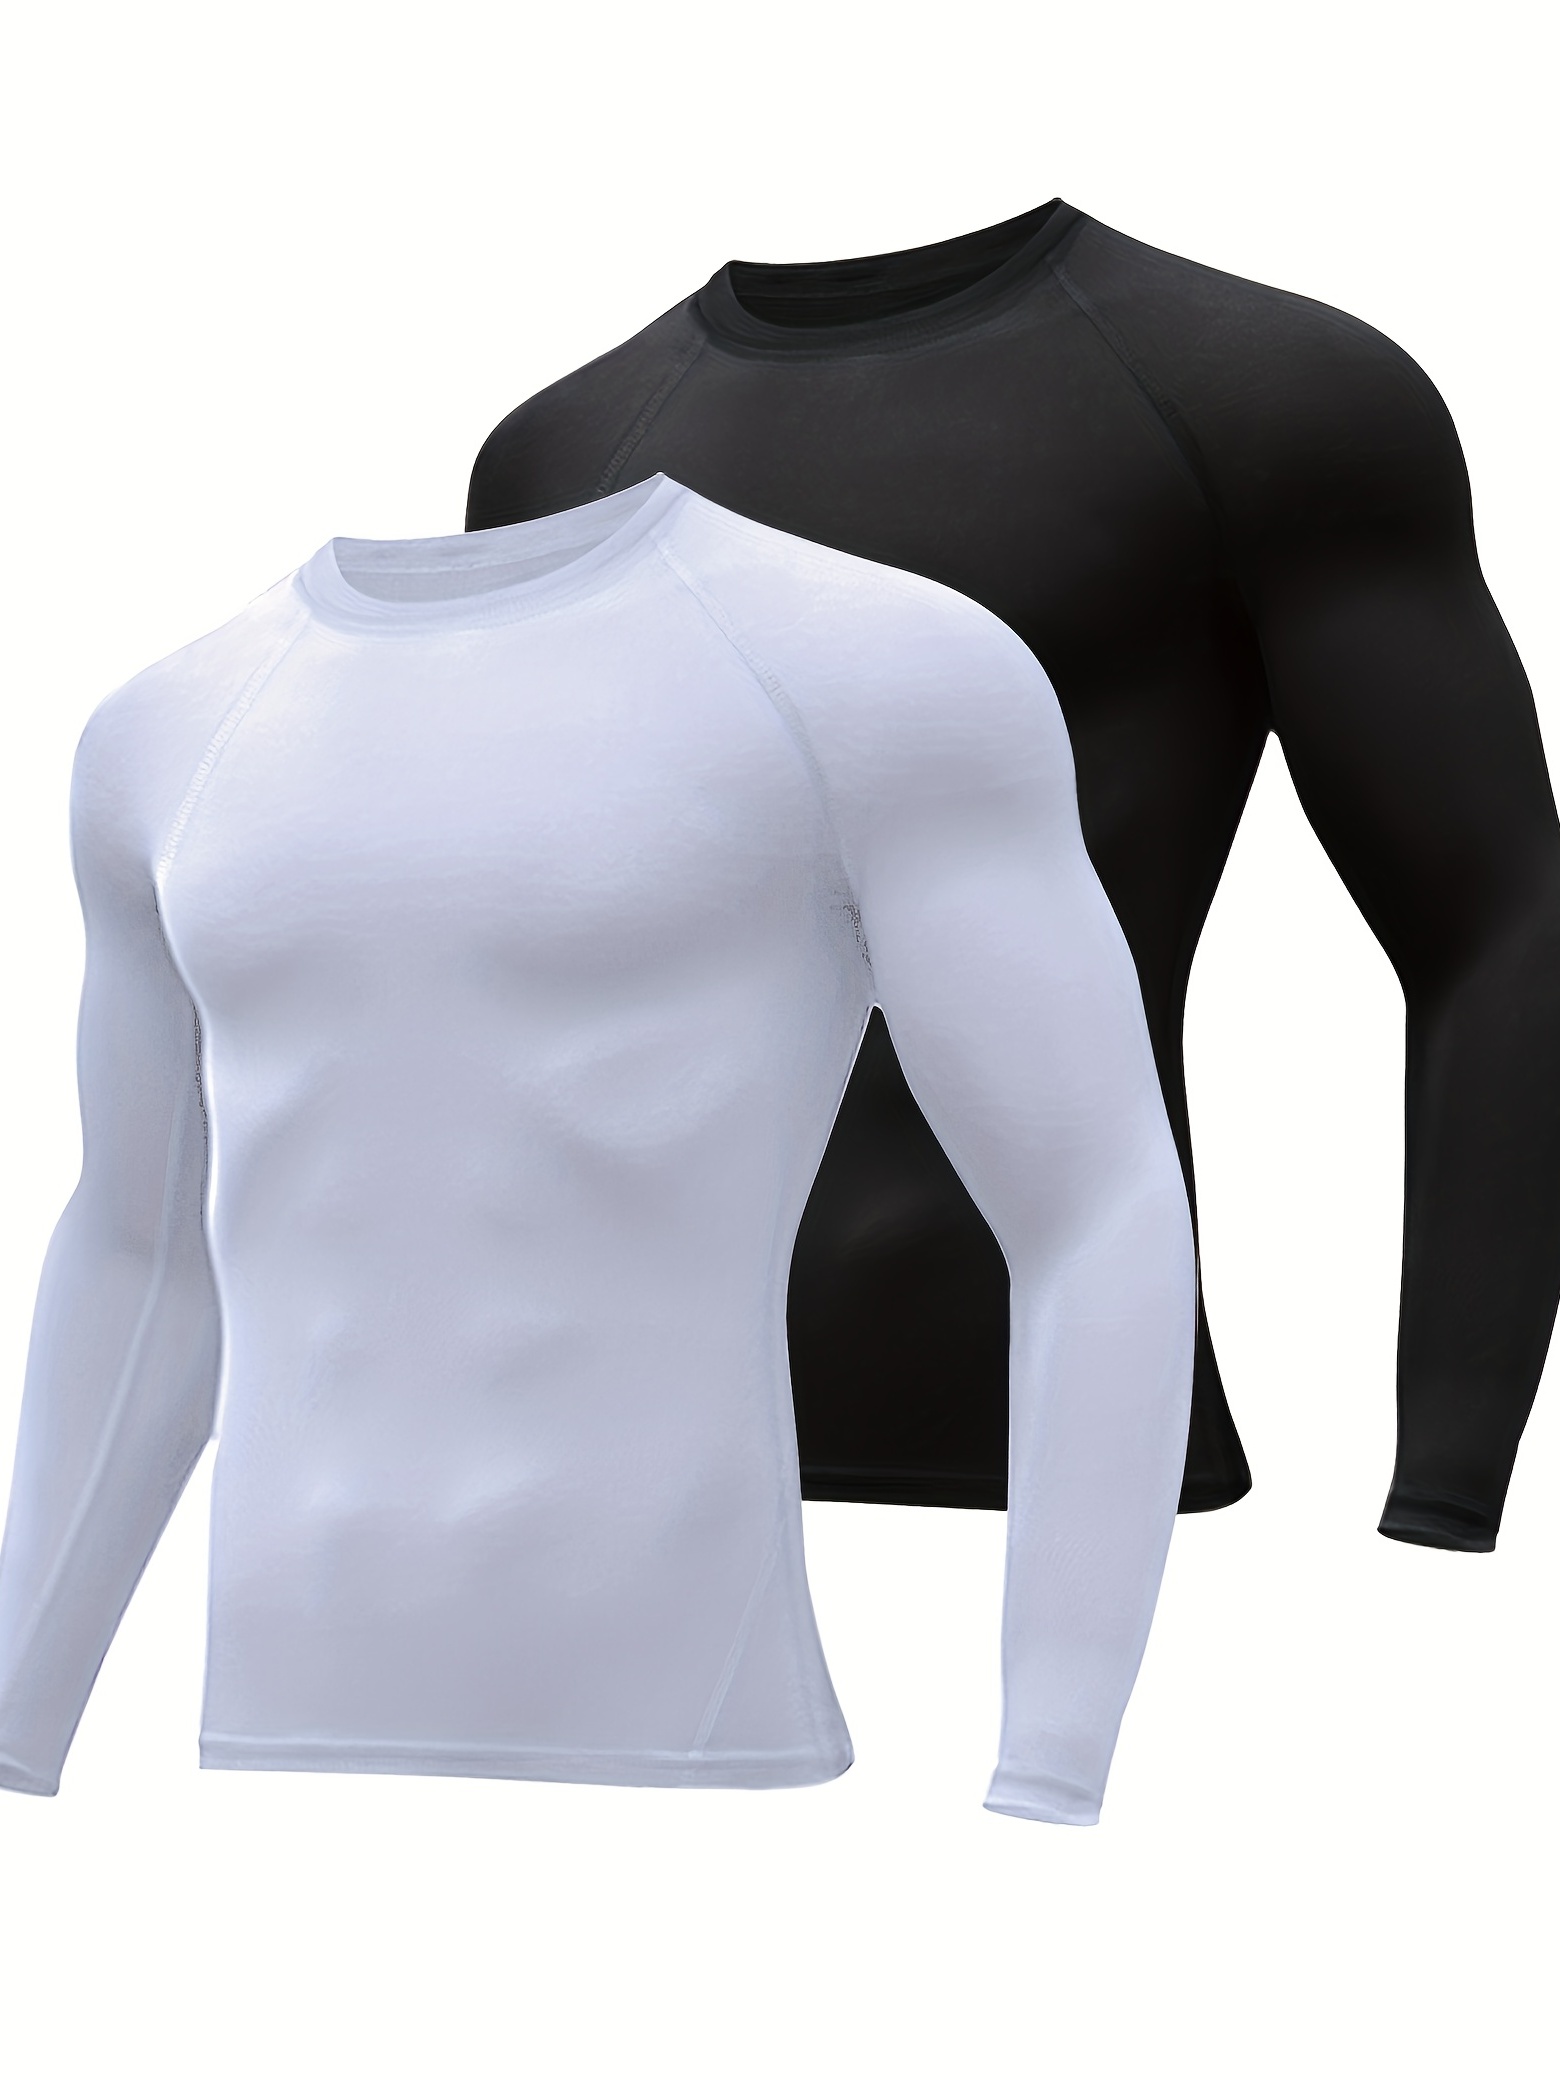 Camisetas Compresión Hombres: ¡ponte En Forma Rápidamente - Temu